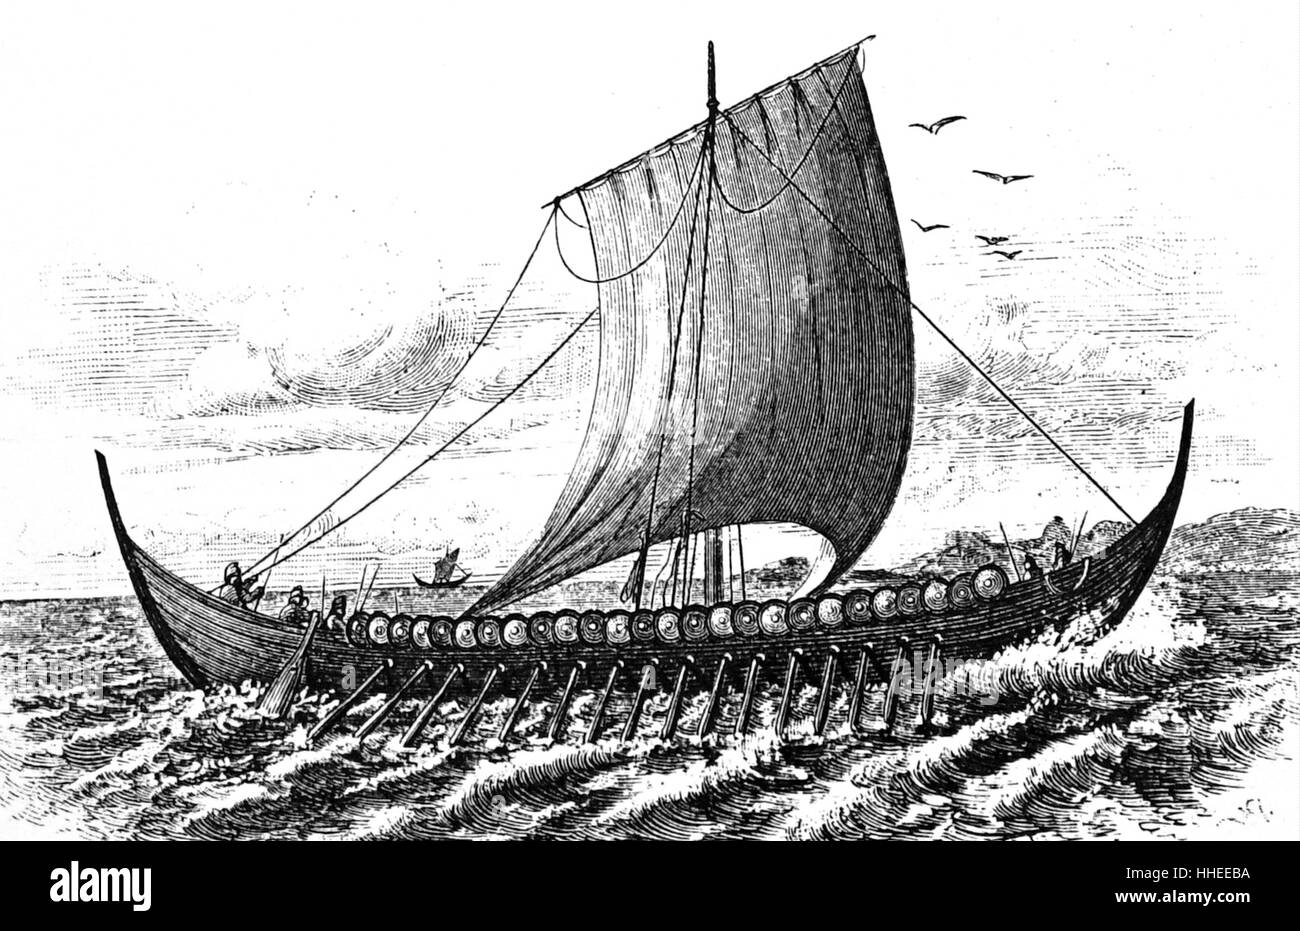 Incisione di una nave vichinga, navi marine di design unico, costruito dai Vichinghi durante il periodo vichingo. Datato al X secolo Foto Stock